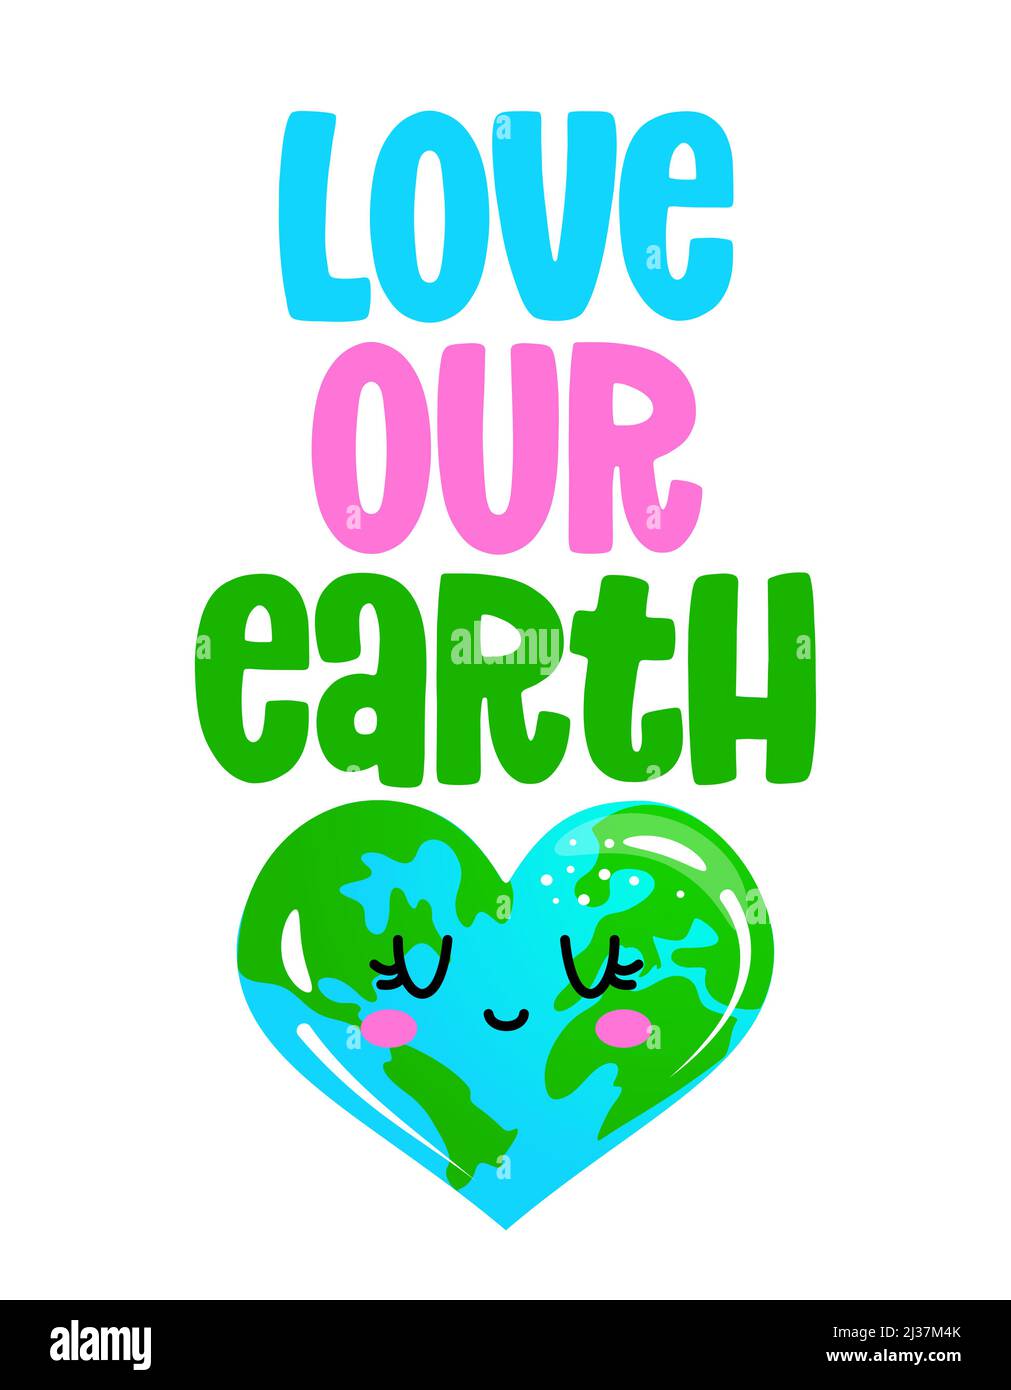 Love Our Earth - le jour de la Terre kawaii dessin avec la forme de coeur de la Terre. Affiche ou t-shirt motif textile. Belle illustration. Environnement jour de la Terre Illustration de Vecteur